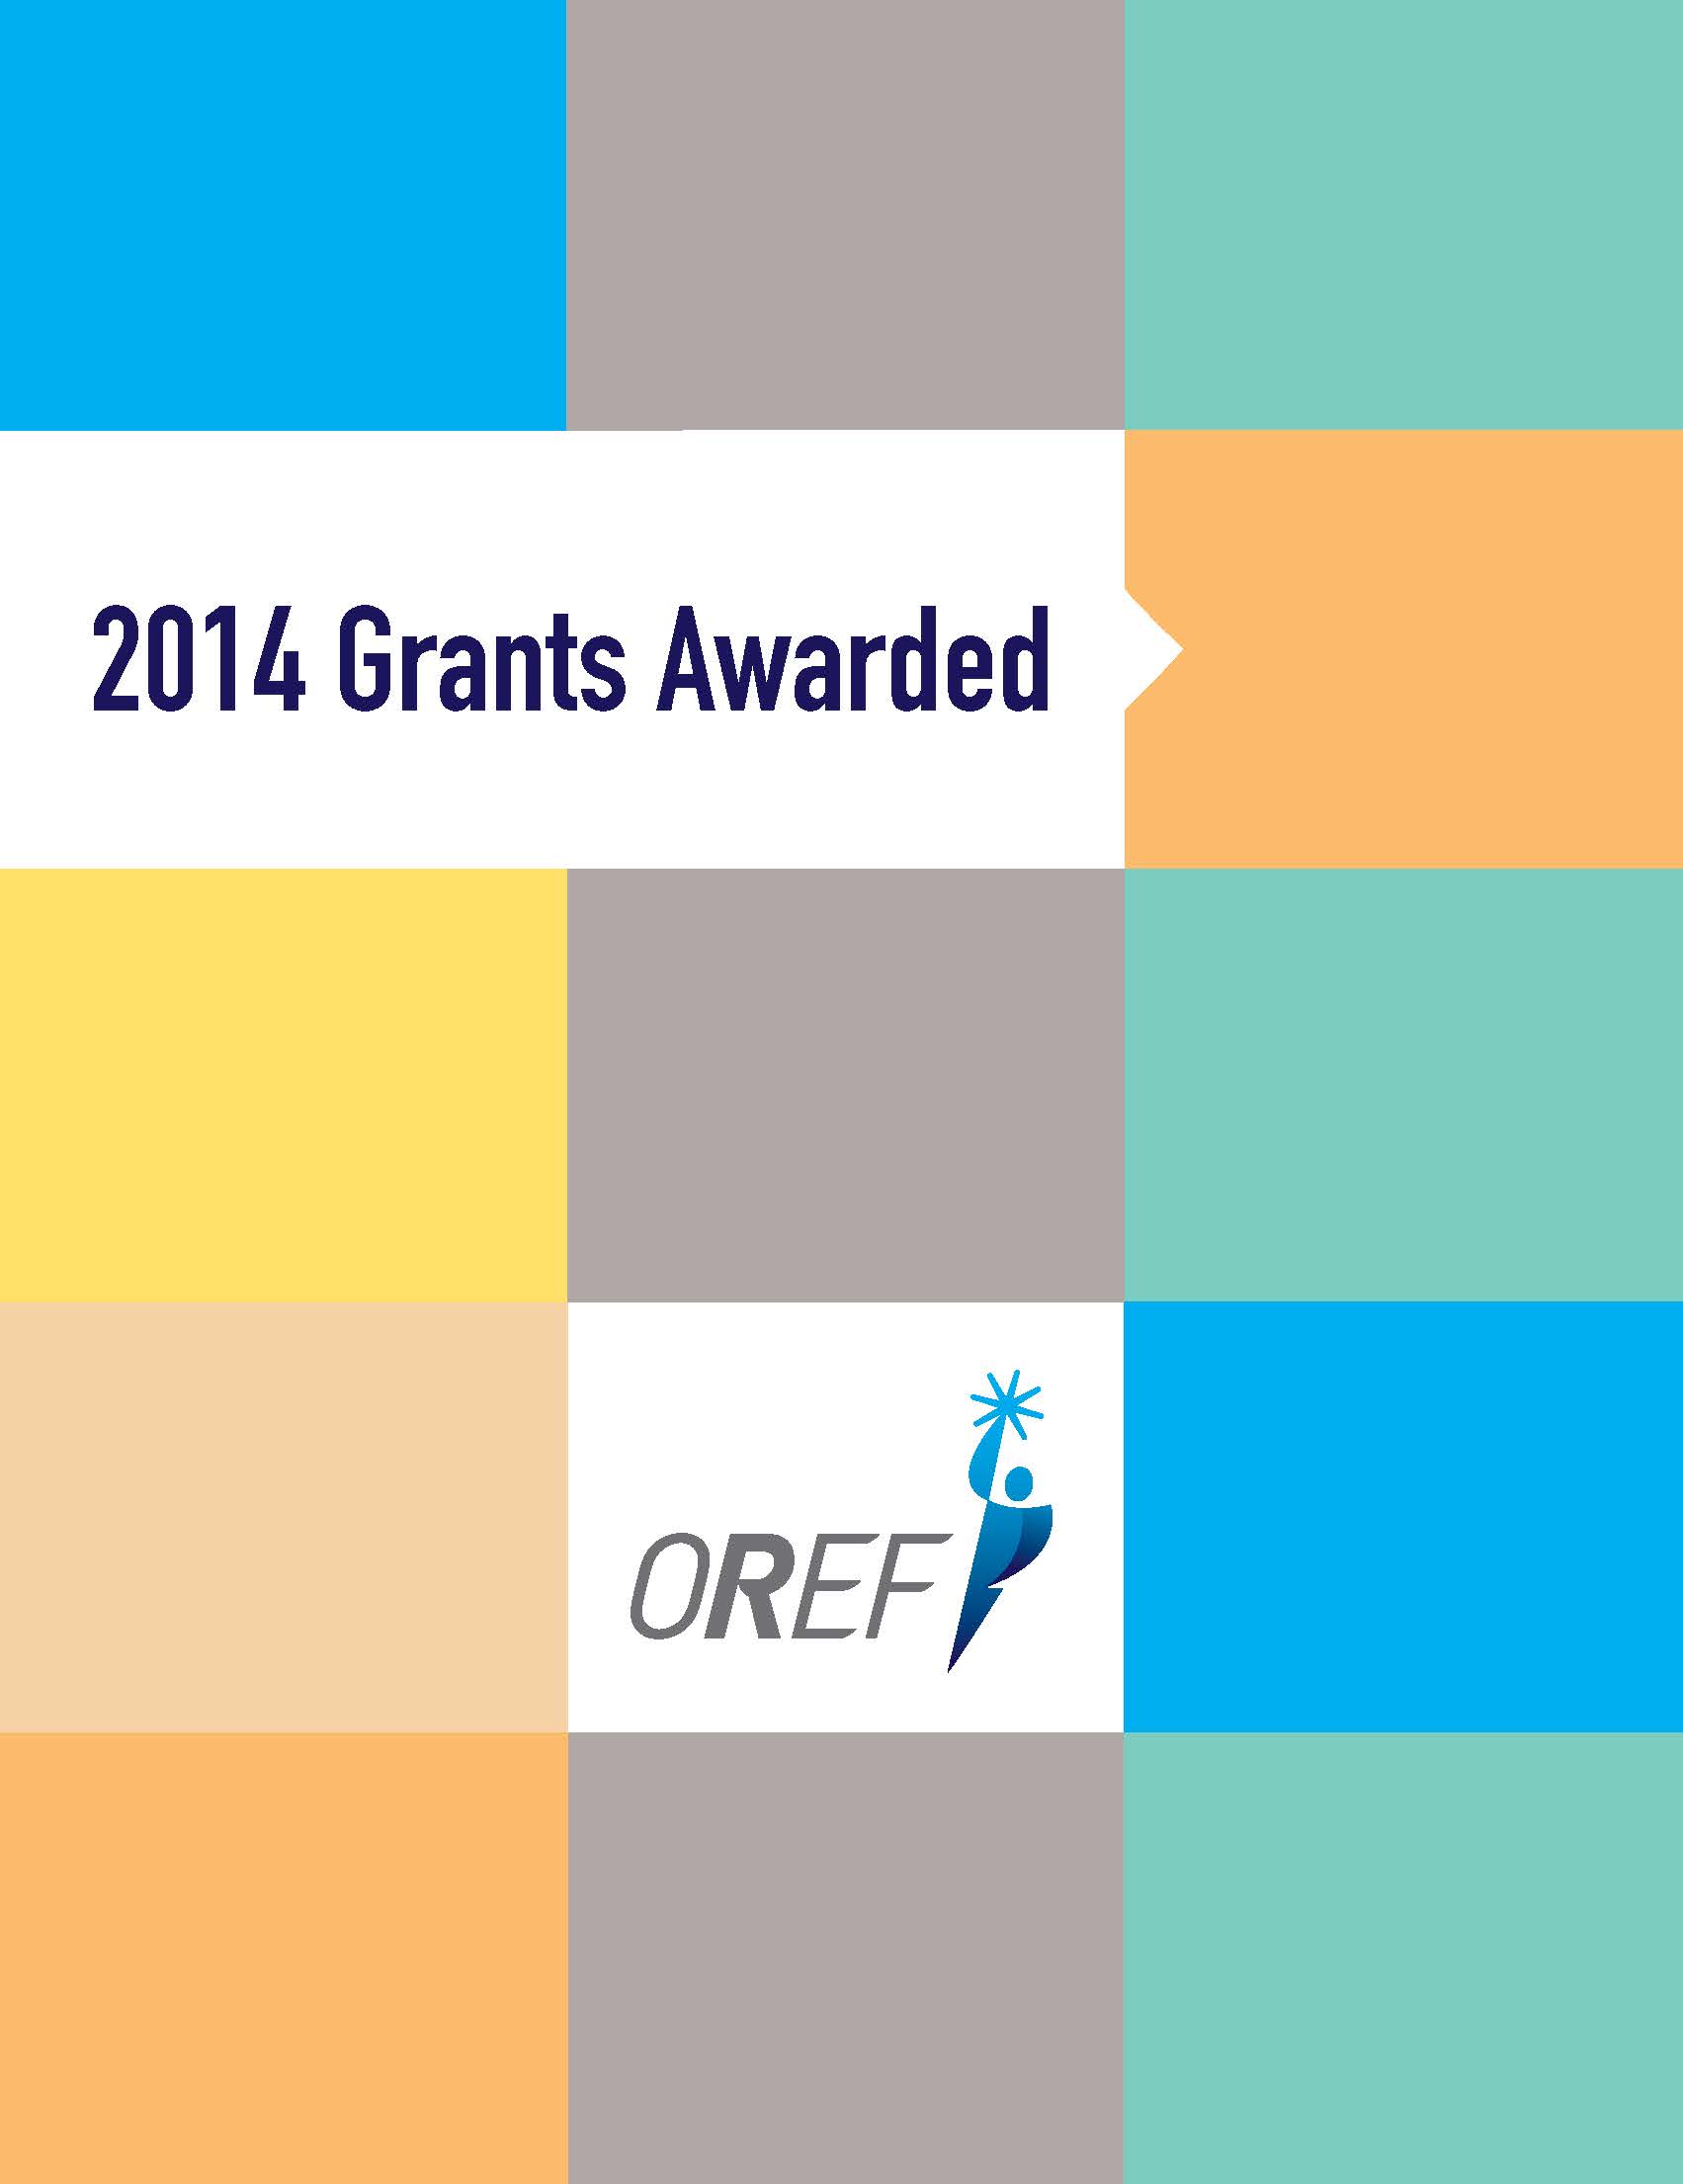 2014 OREF Grants Awarded